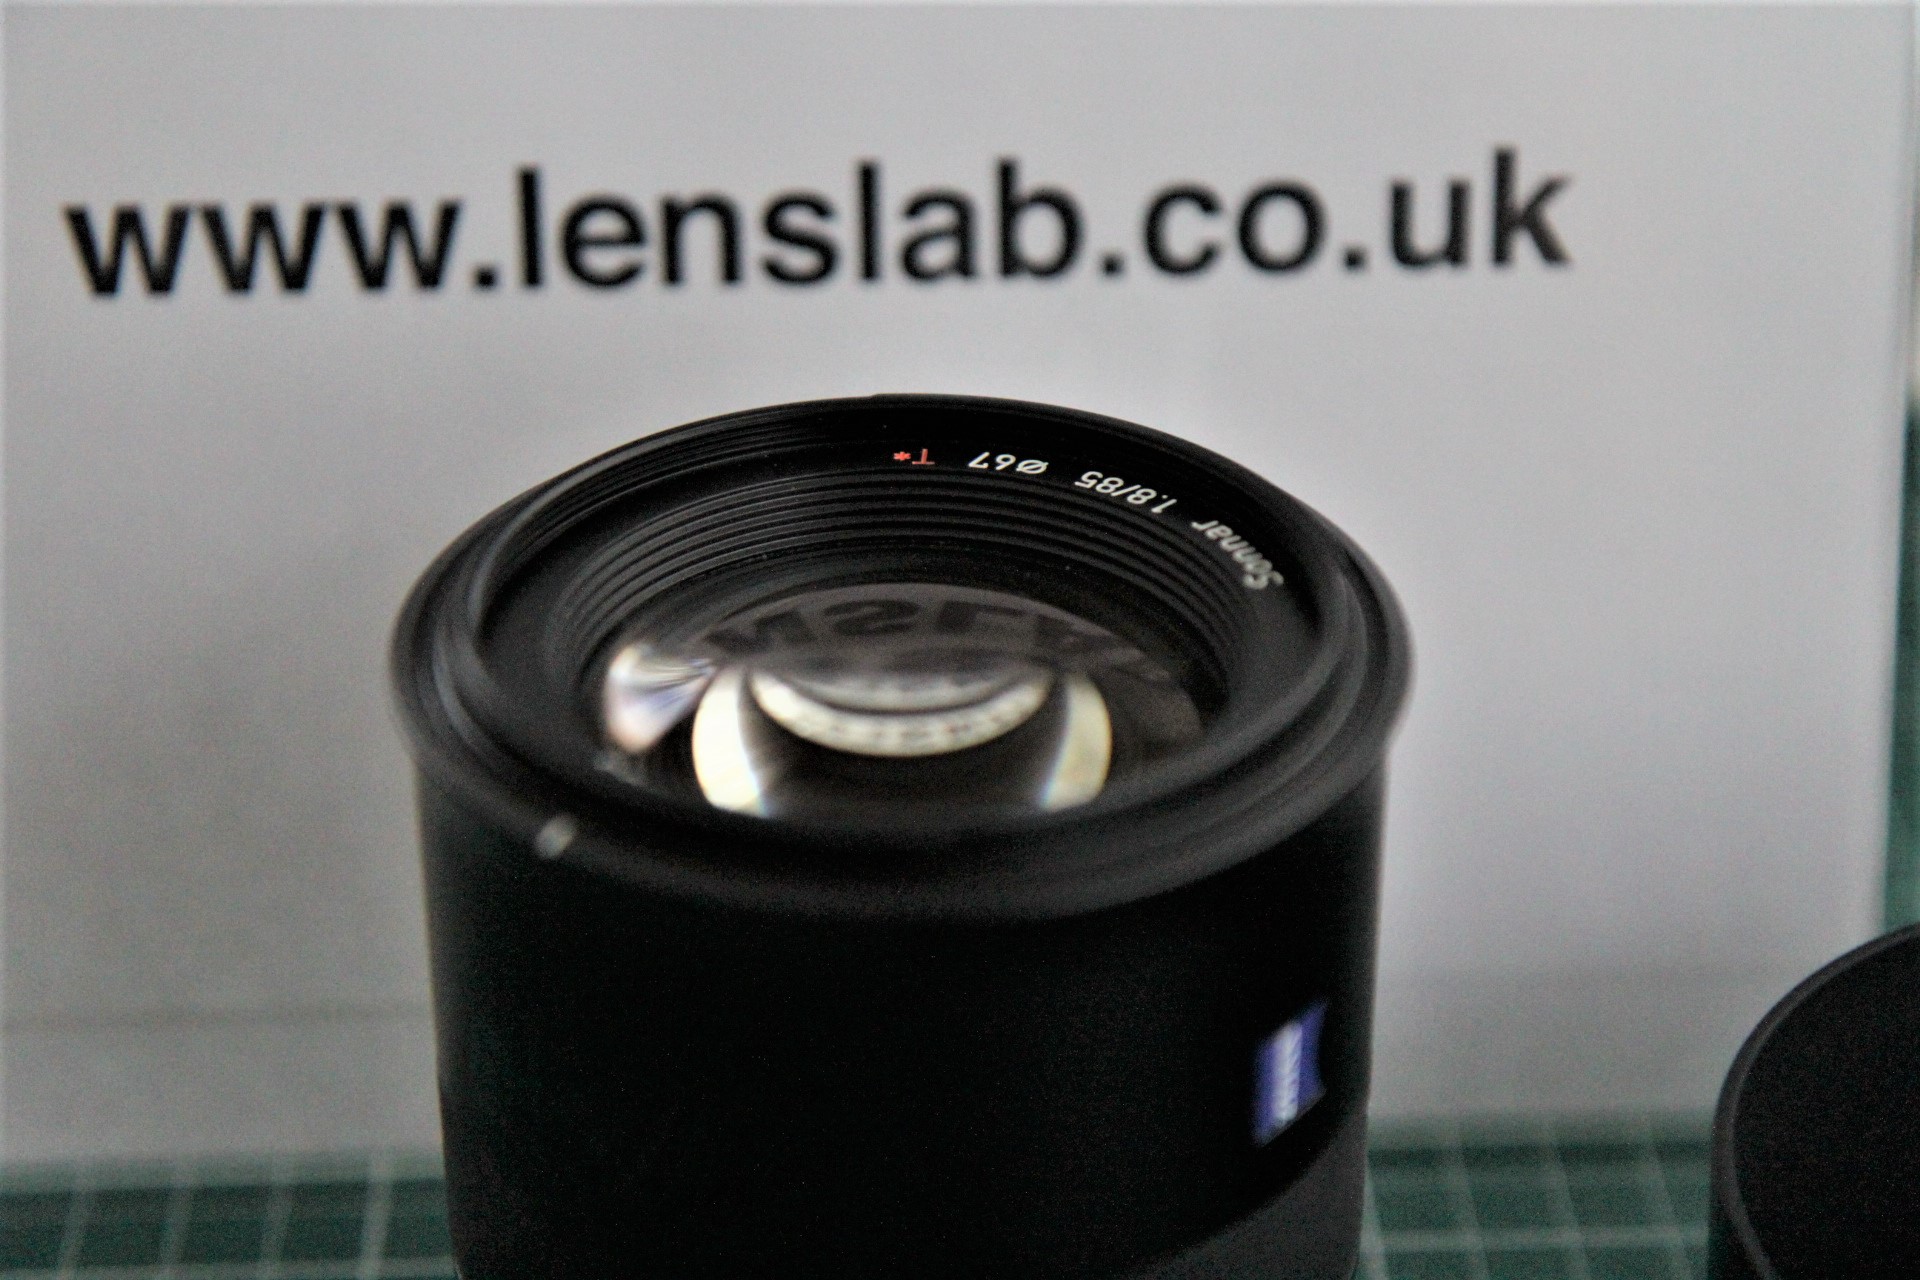 Zeiss 85mm f1.8 Batis Lens - Sony E Mount